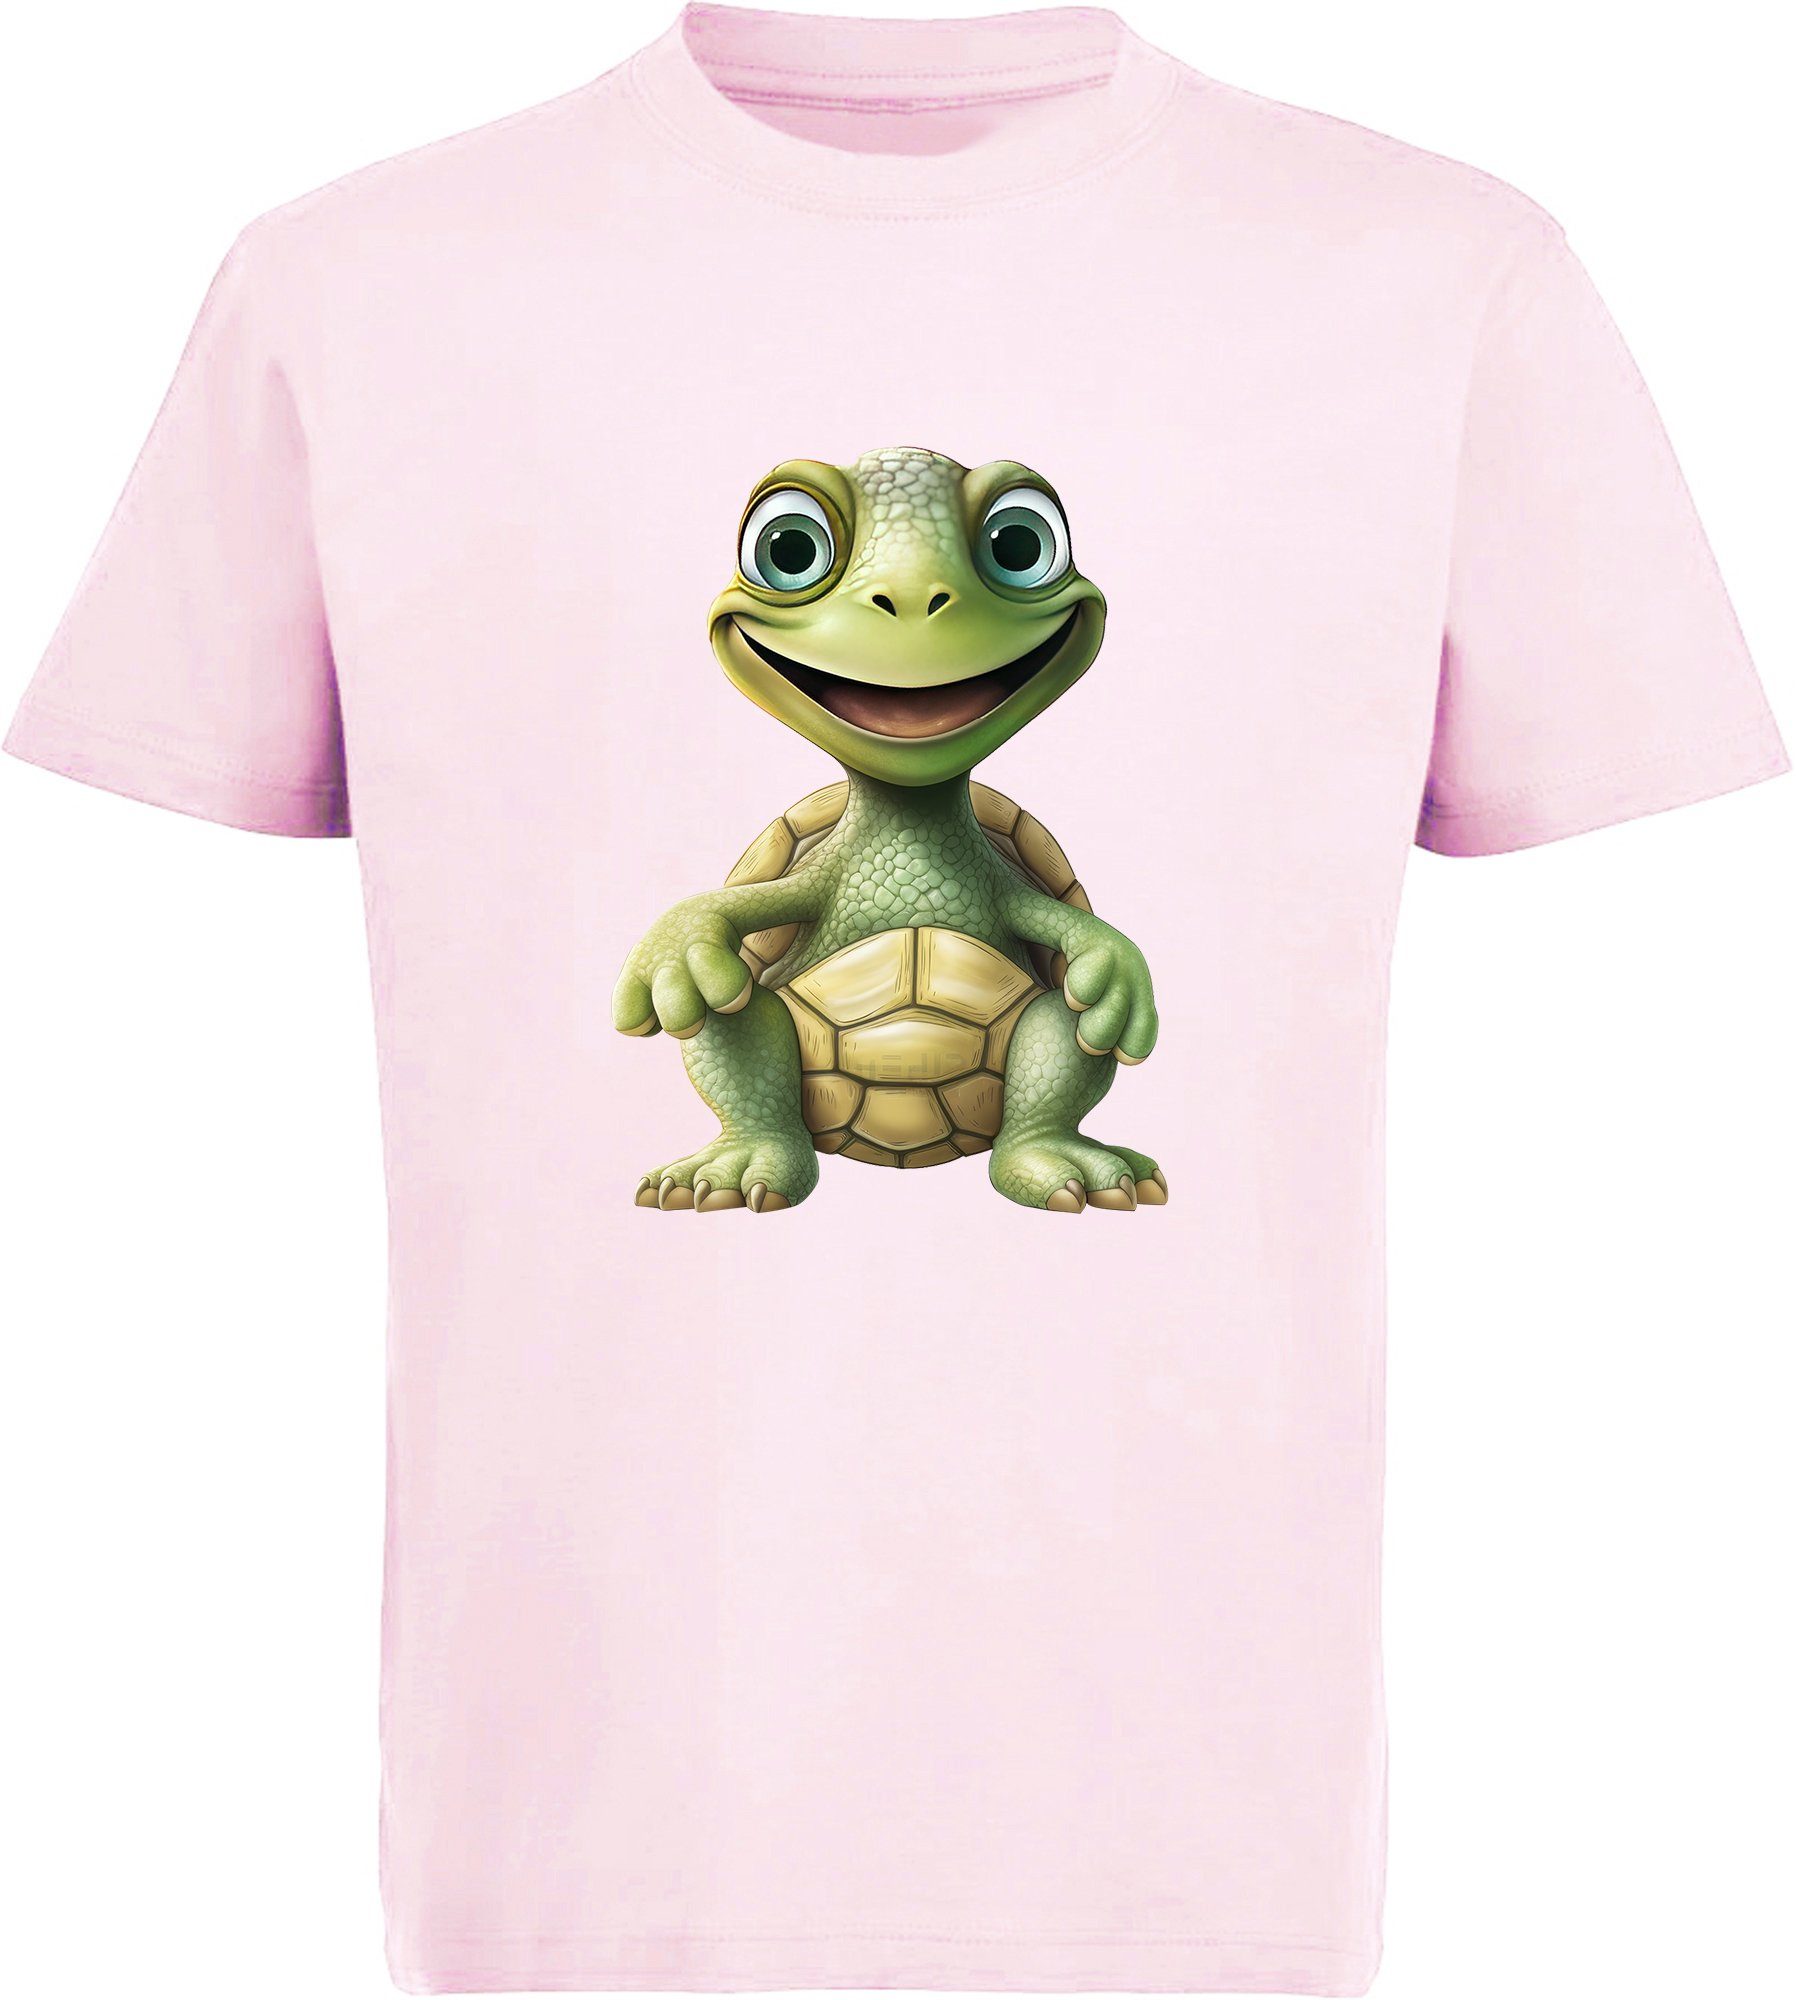 MyDesign24 T-Shirt Kinder Wildtier Print Shirt bedruckt - Baby Schildkröte Baumwollshirt mit Aufdruck, i279 rosa